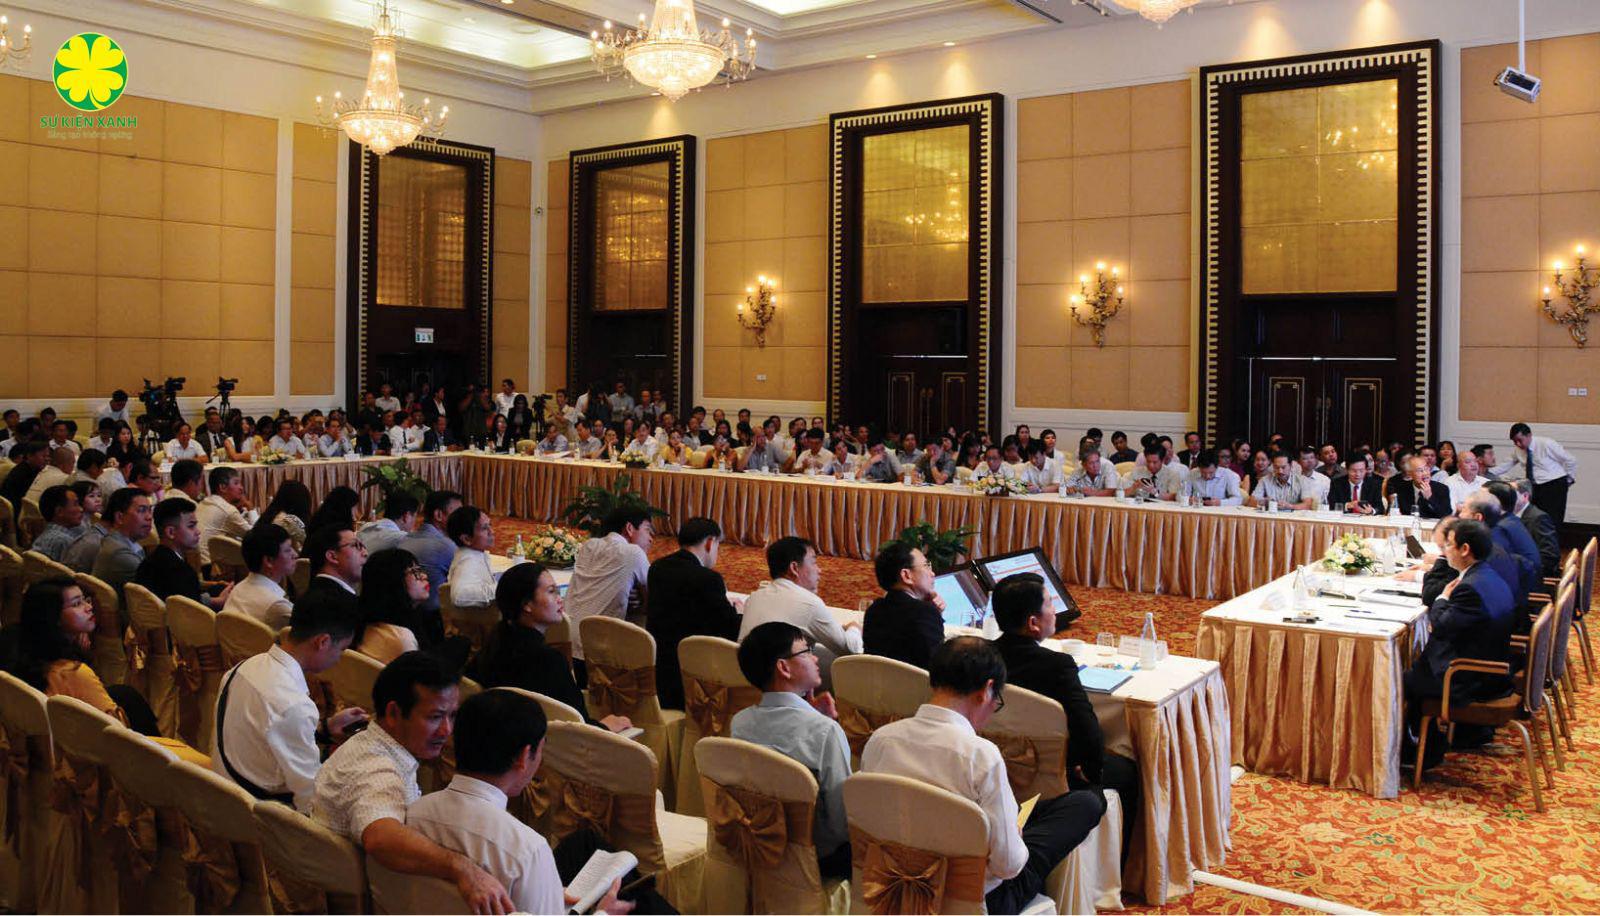 Dịch vụ tổ chức Hội thảo hội nghị chuyên nghiệp, uy tín tại Bắc Ninh